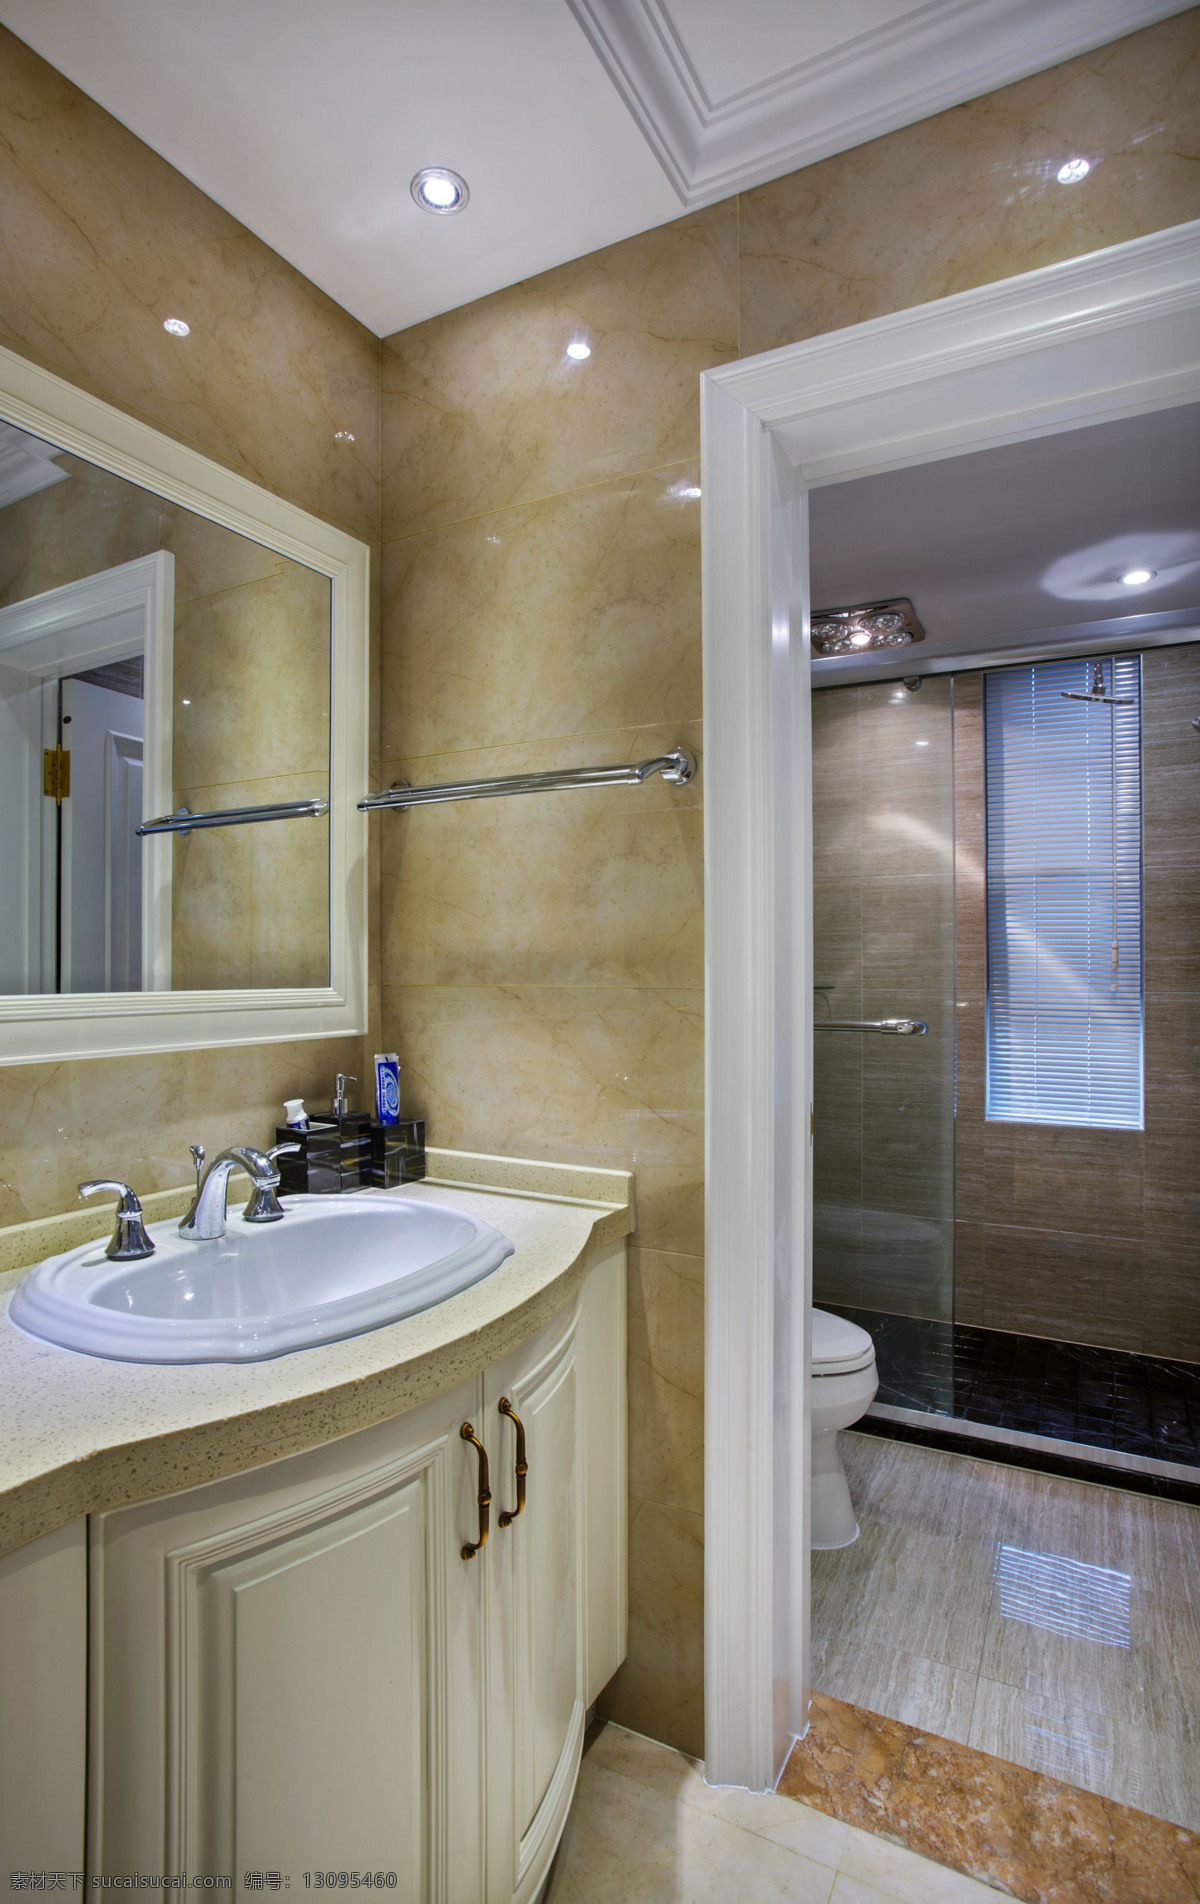 欧式 风格 卫生间 瓷砖 背景 墙 室内装修 效果图 卫生间装修 洗手池 瓷砖装修 透明玻璃